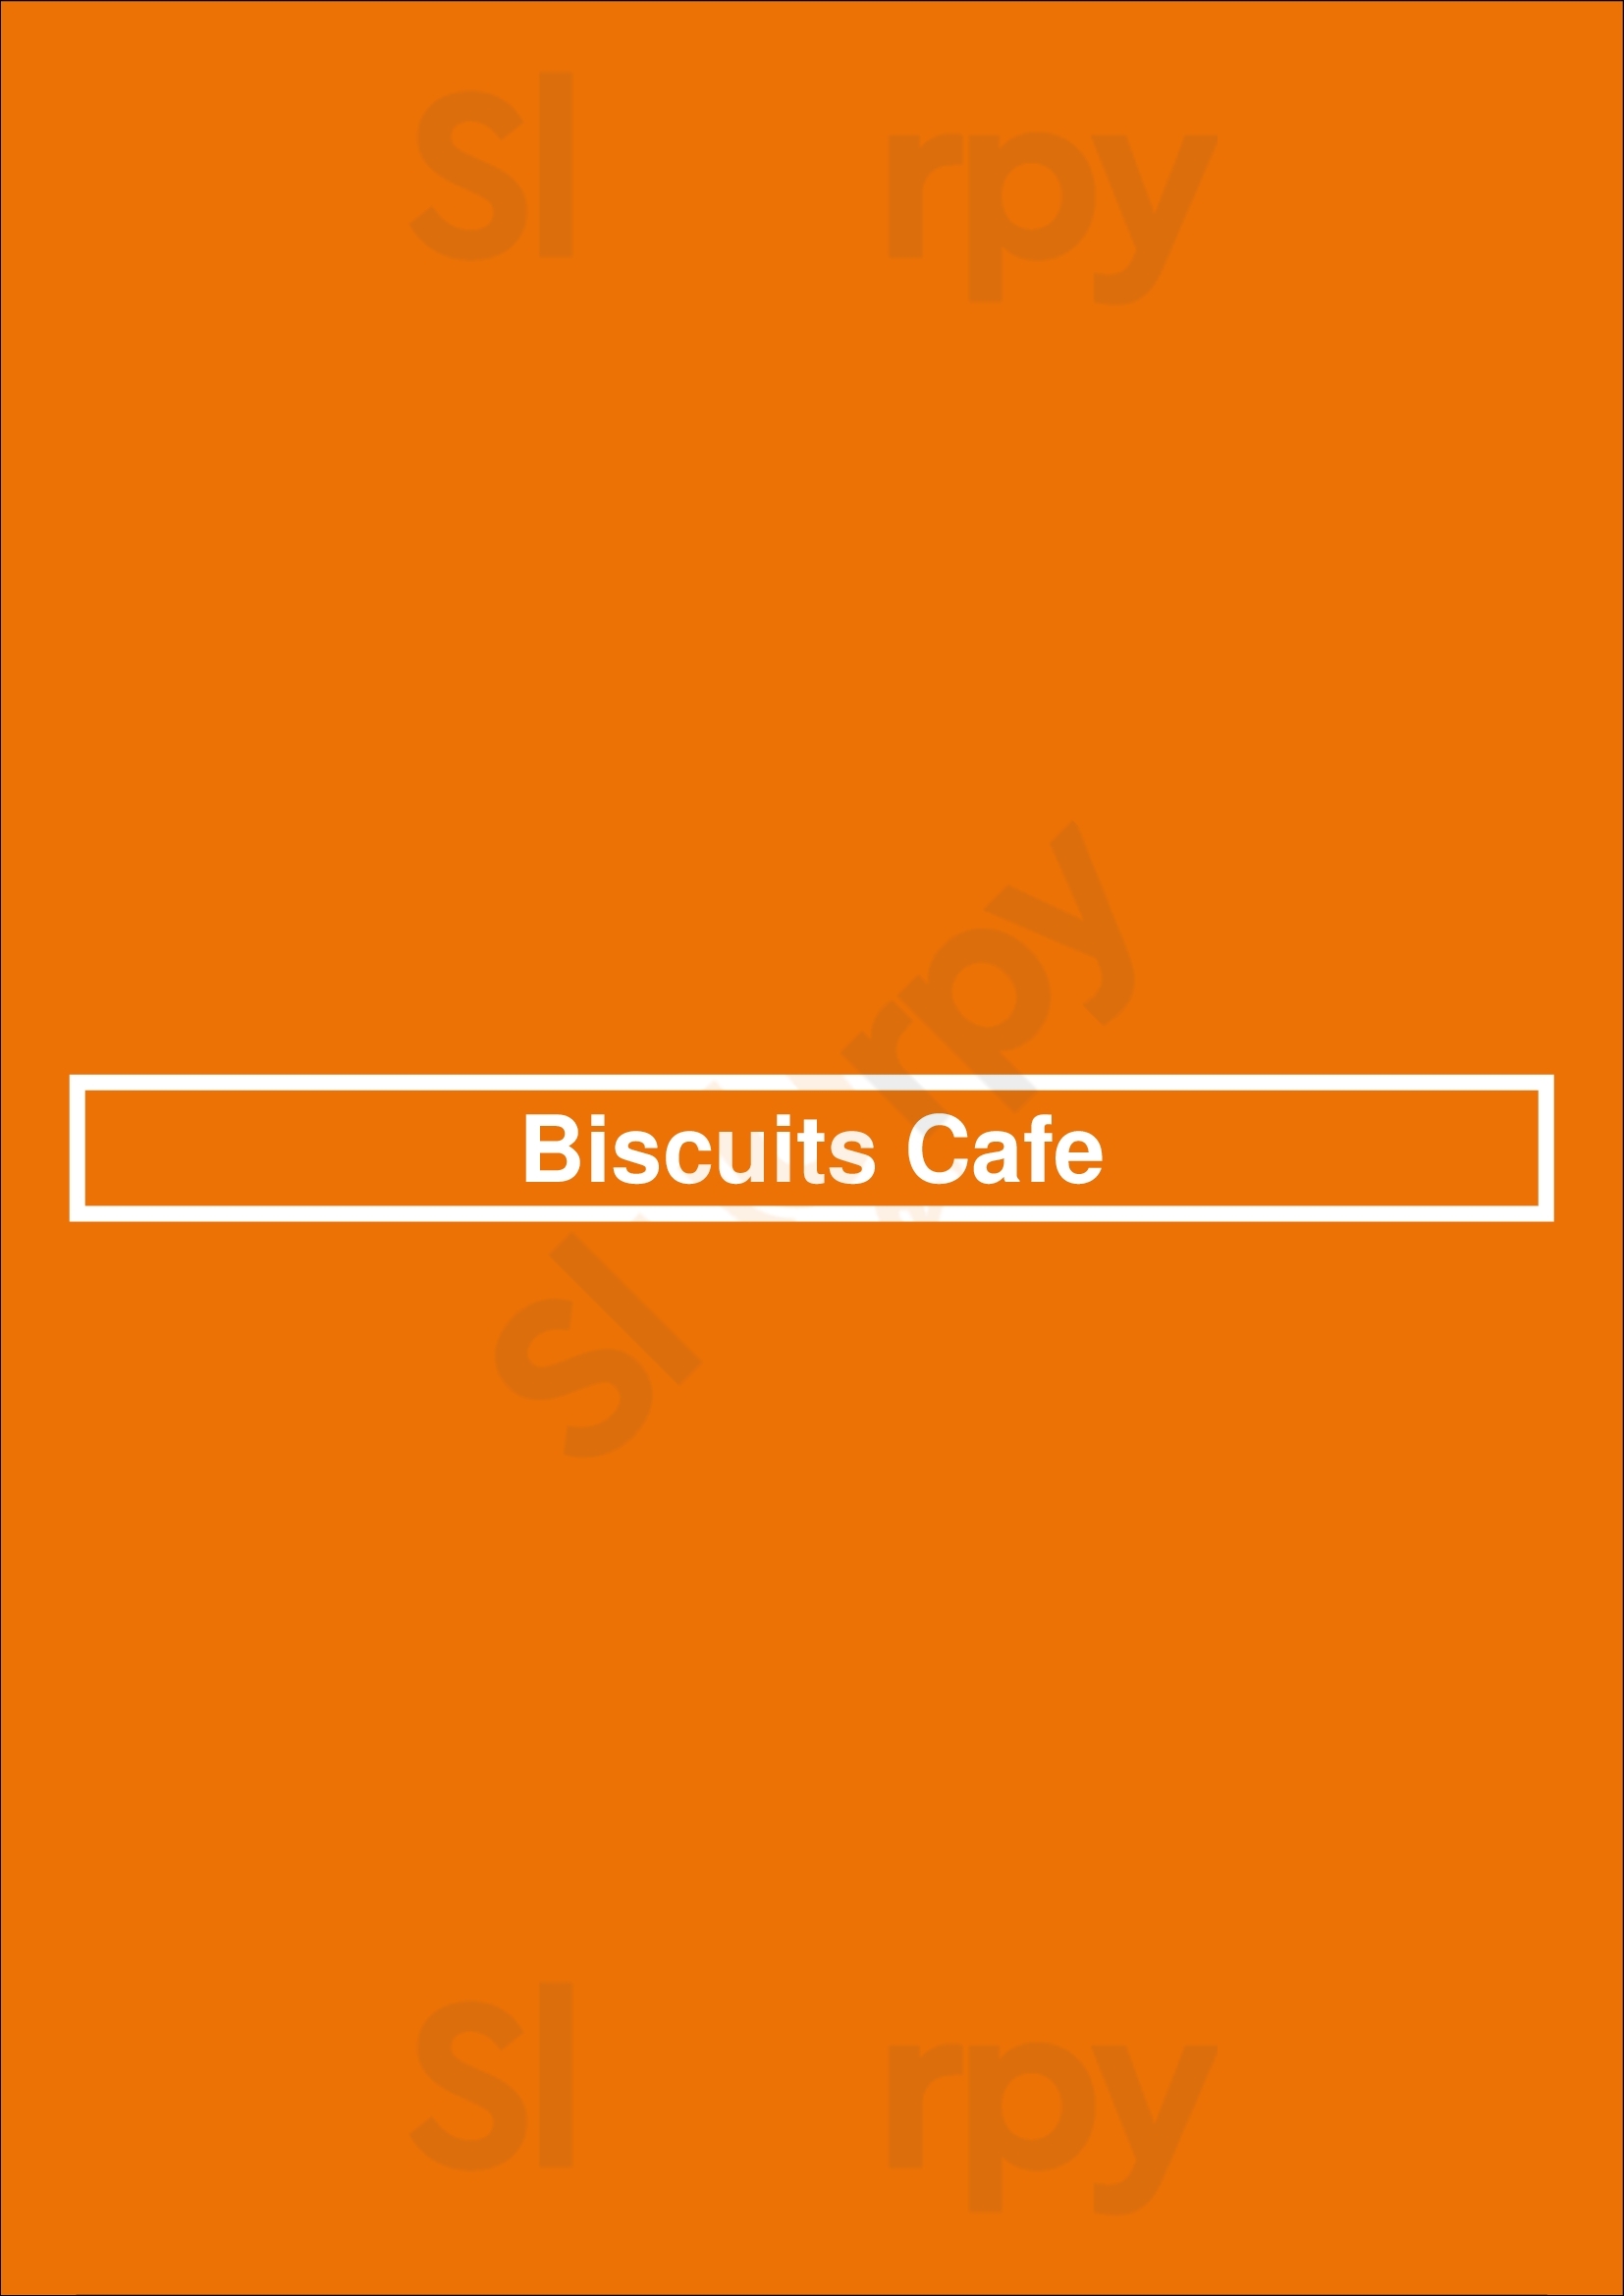 Biscuits Cafe Glendale Menu - 1